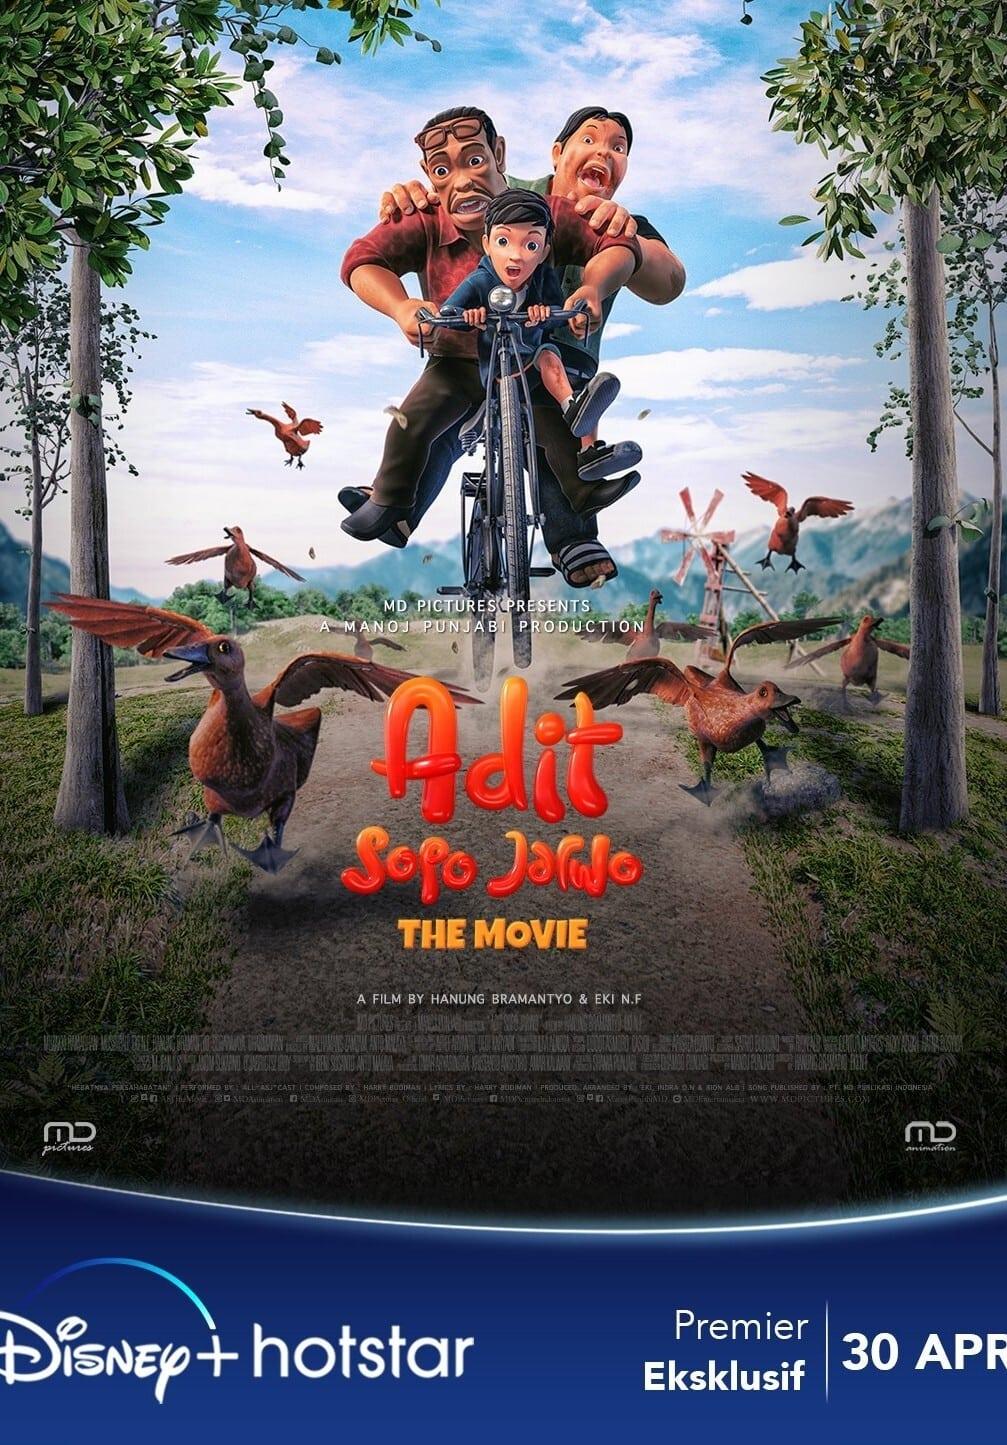 Adit Sopo Jarwo: The Movie poster